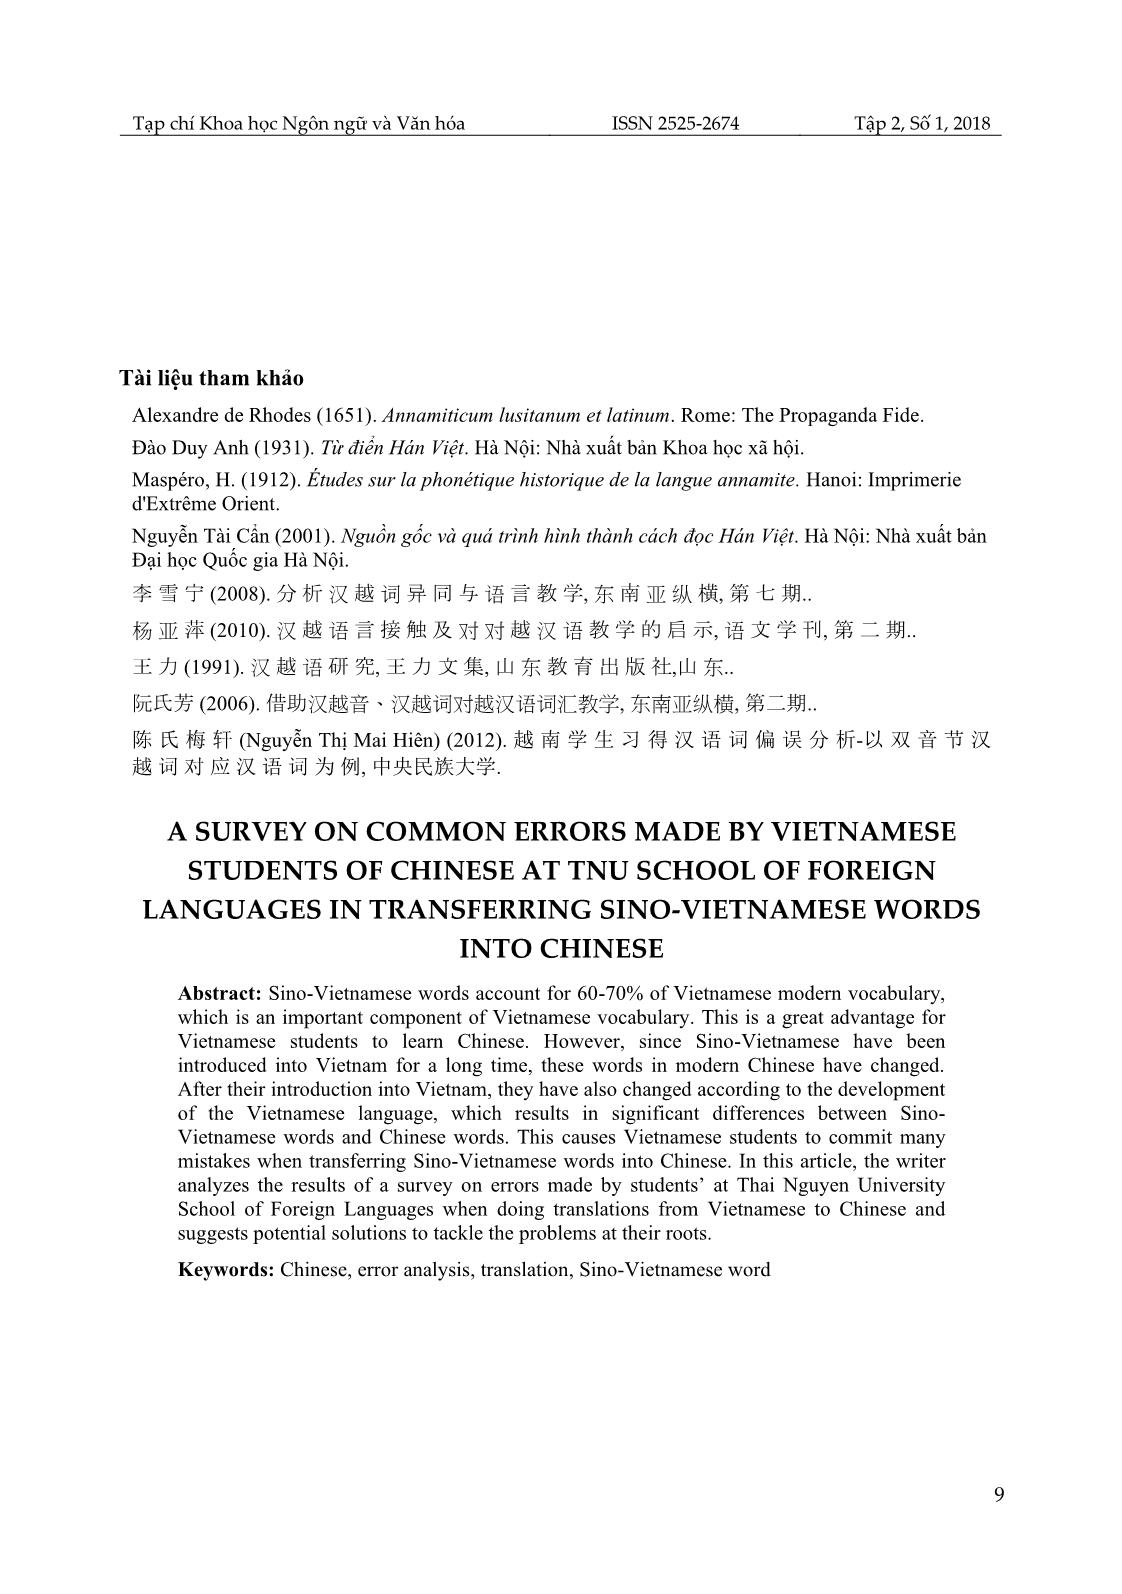 Khảo sát lỗi sai của sinh viên khoa Ngoại ngữ, Đại học Thái Nguyên khi dịch trực tiếp từ Hán Việt sang tiếng Trung và giải pháp khắc phục trang 9